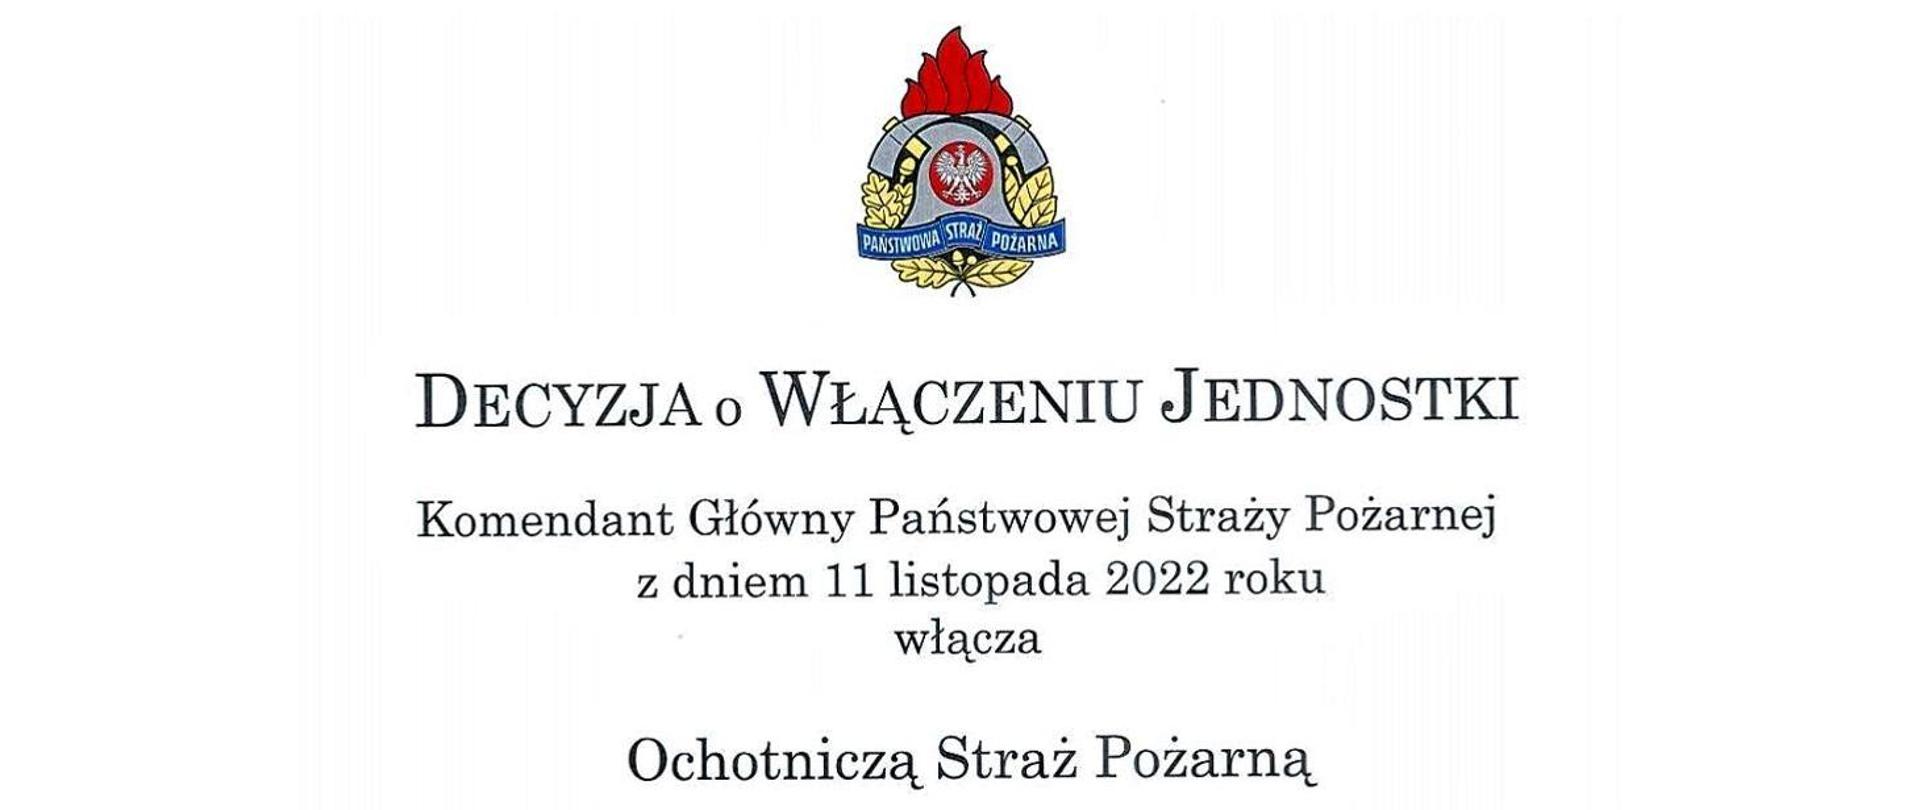 19 jednostek OSP z Mazowsza włączonych do Krajowego Systemu Ratowniczo-Gaśniczego